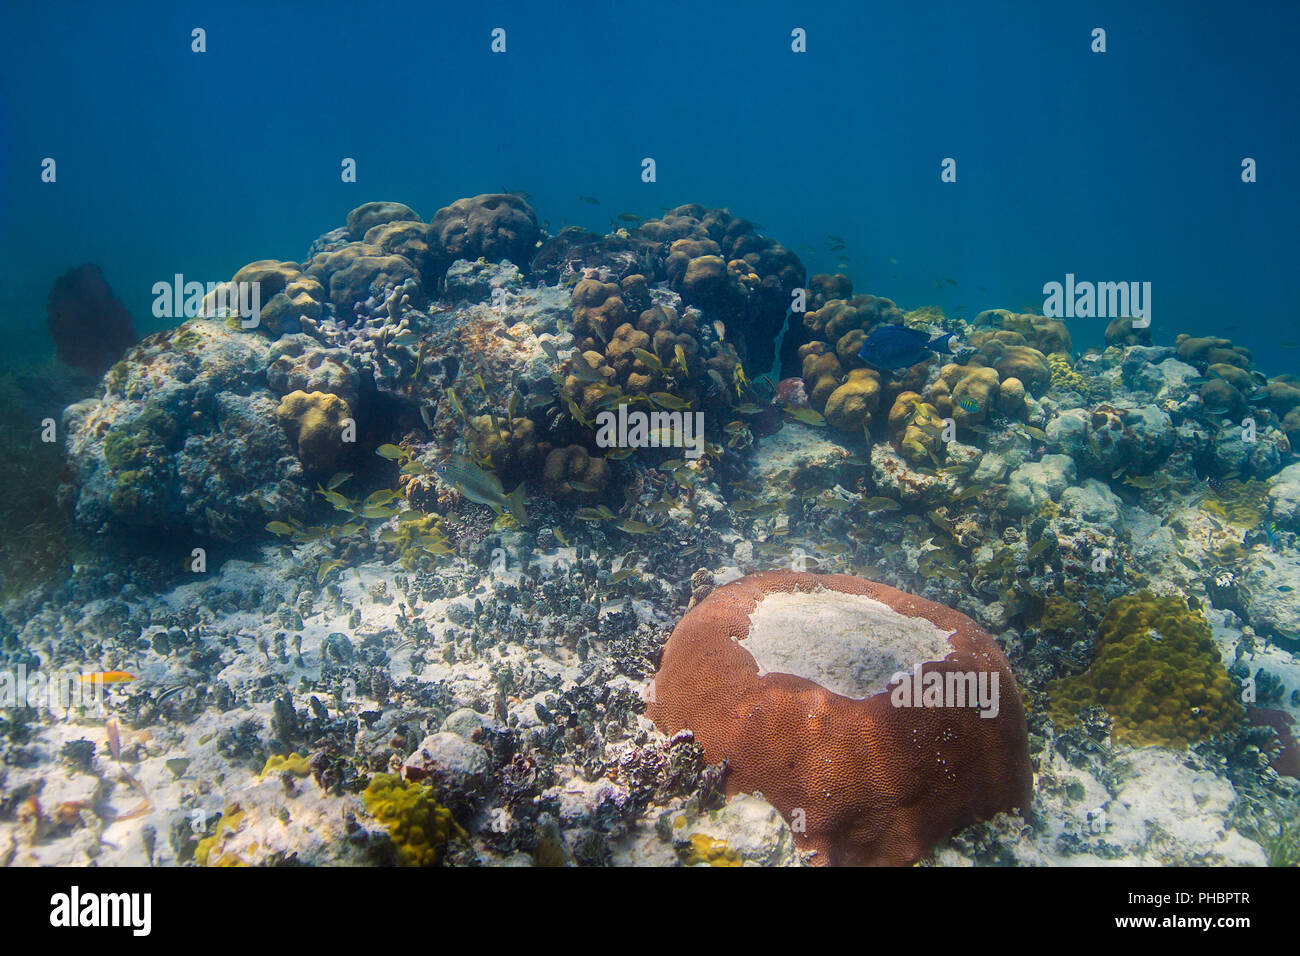 La vida marina en el arrecife. Foto de stock